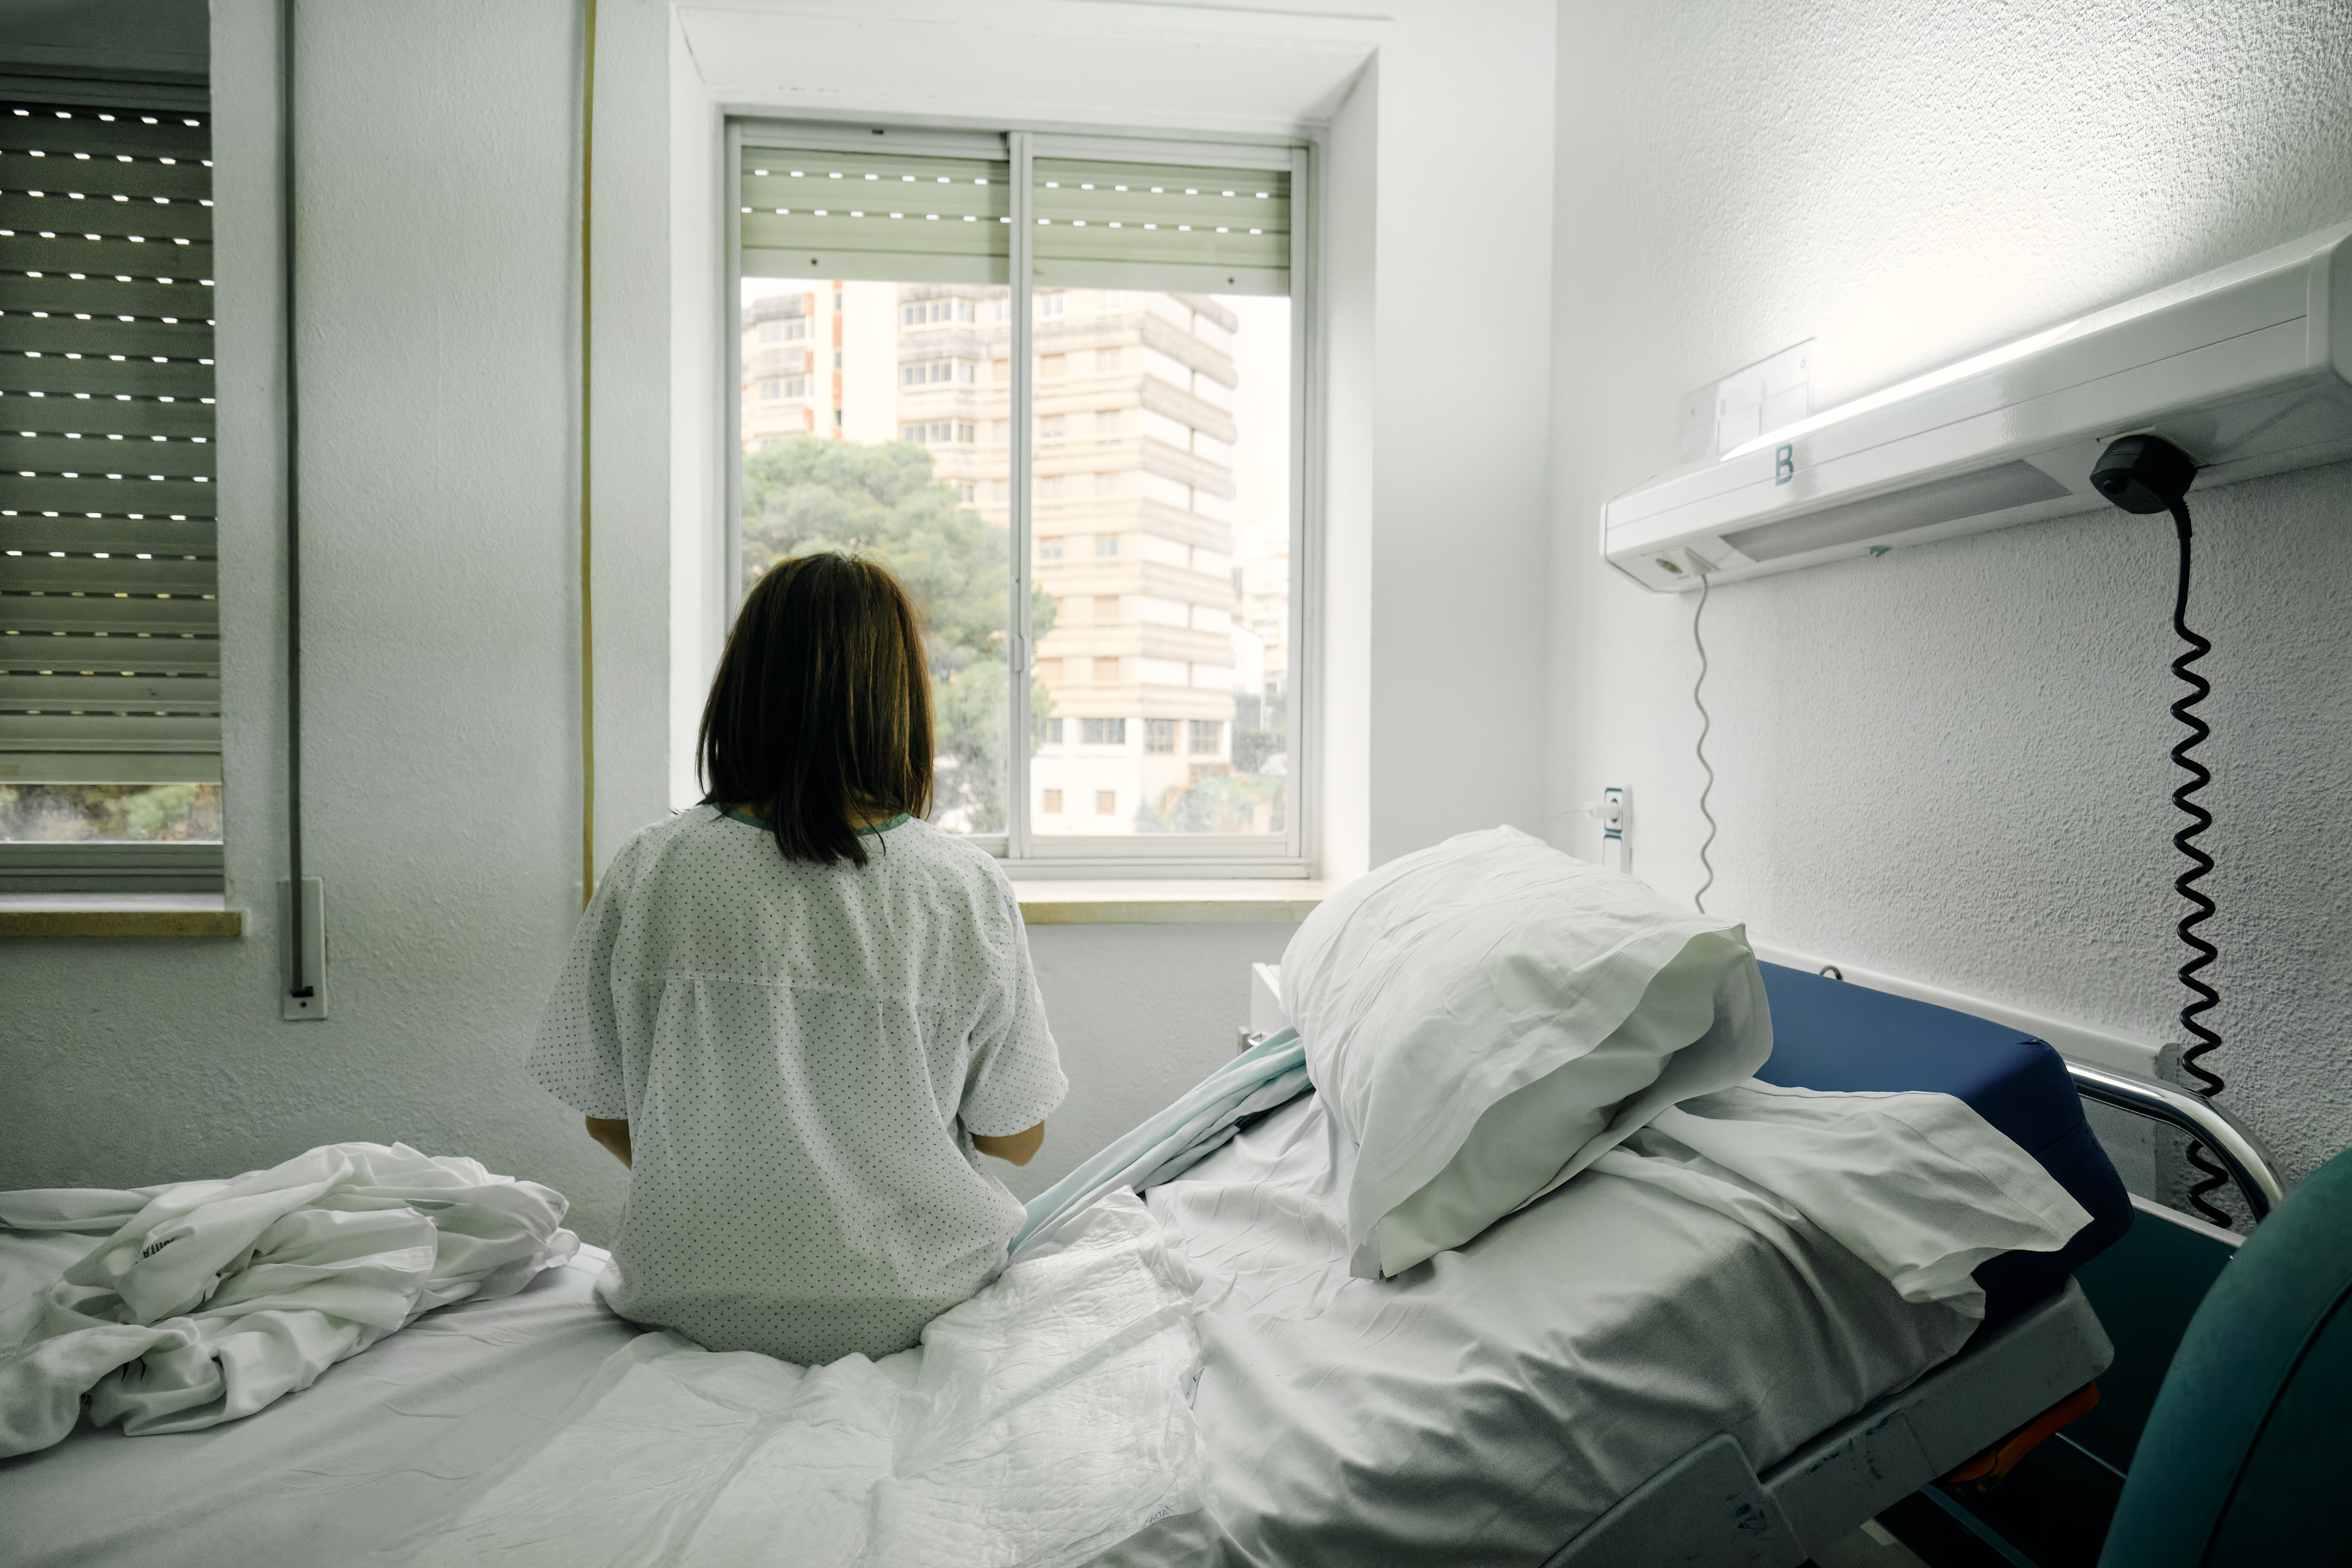 Vue de dos d'une femme assise sur un lit d'hôpital | Source : Getty Images